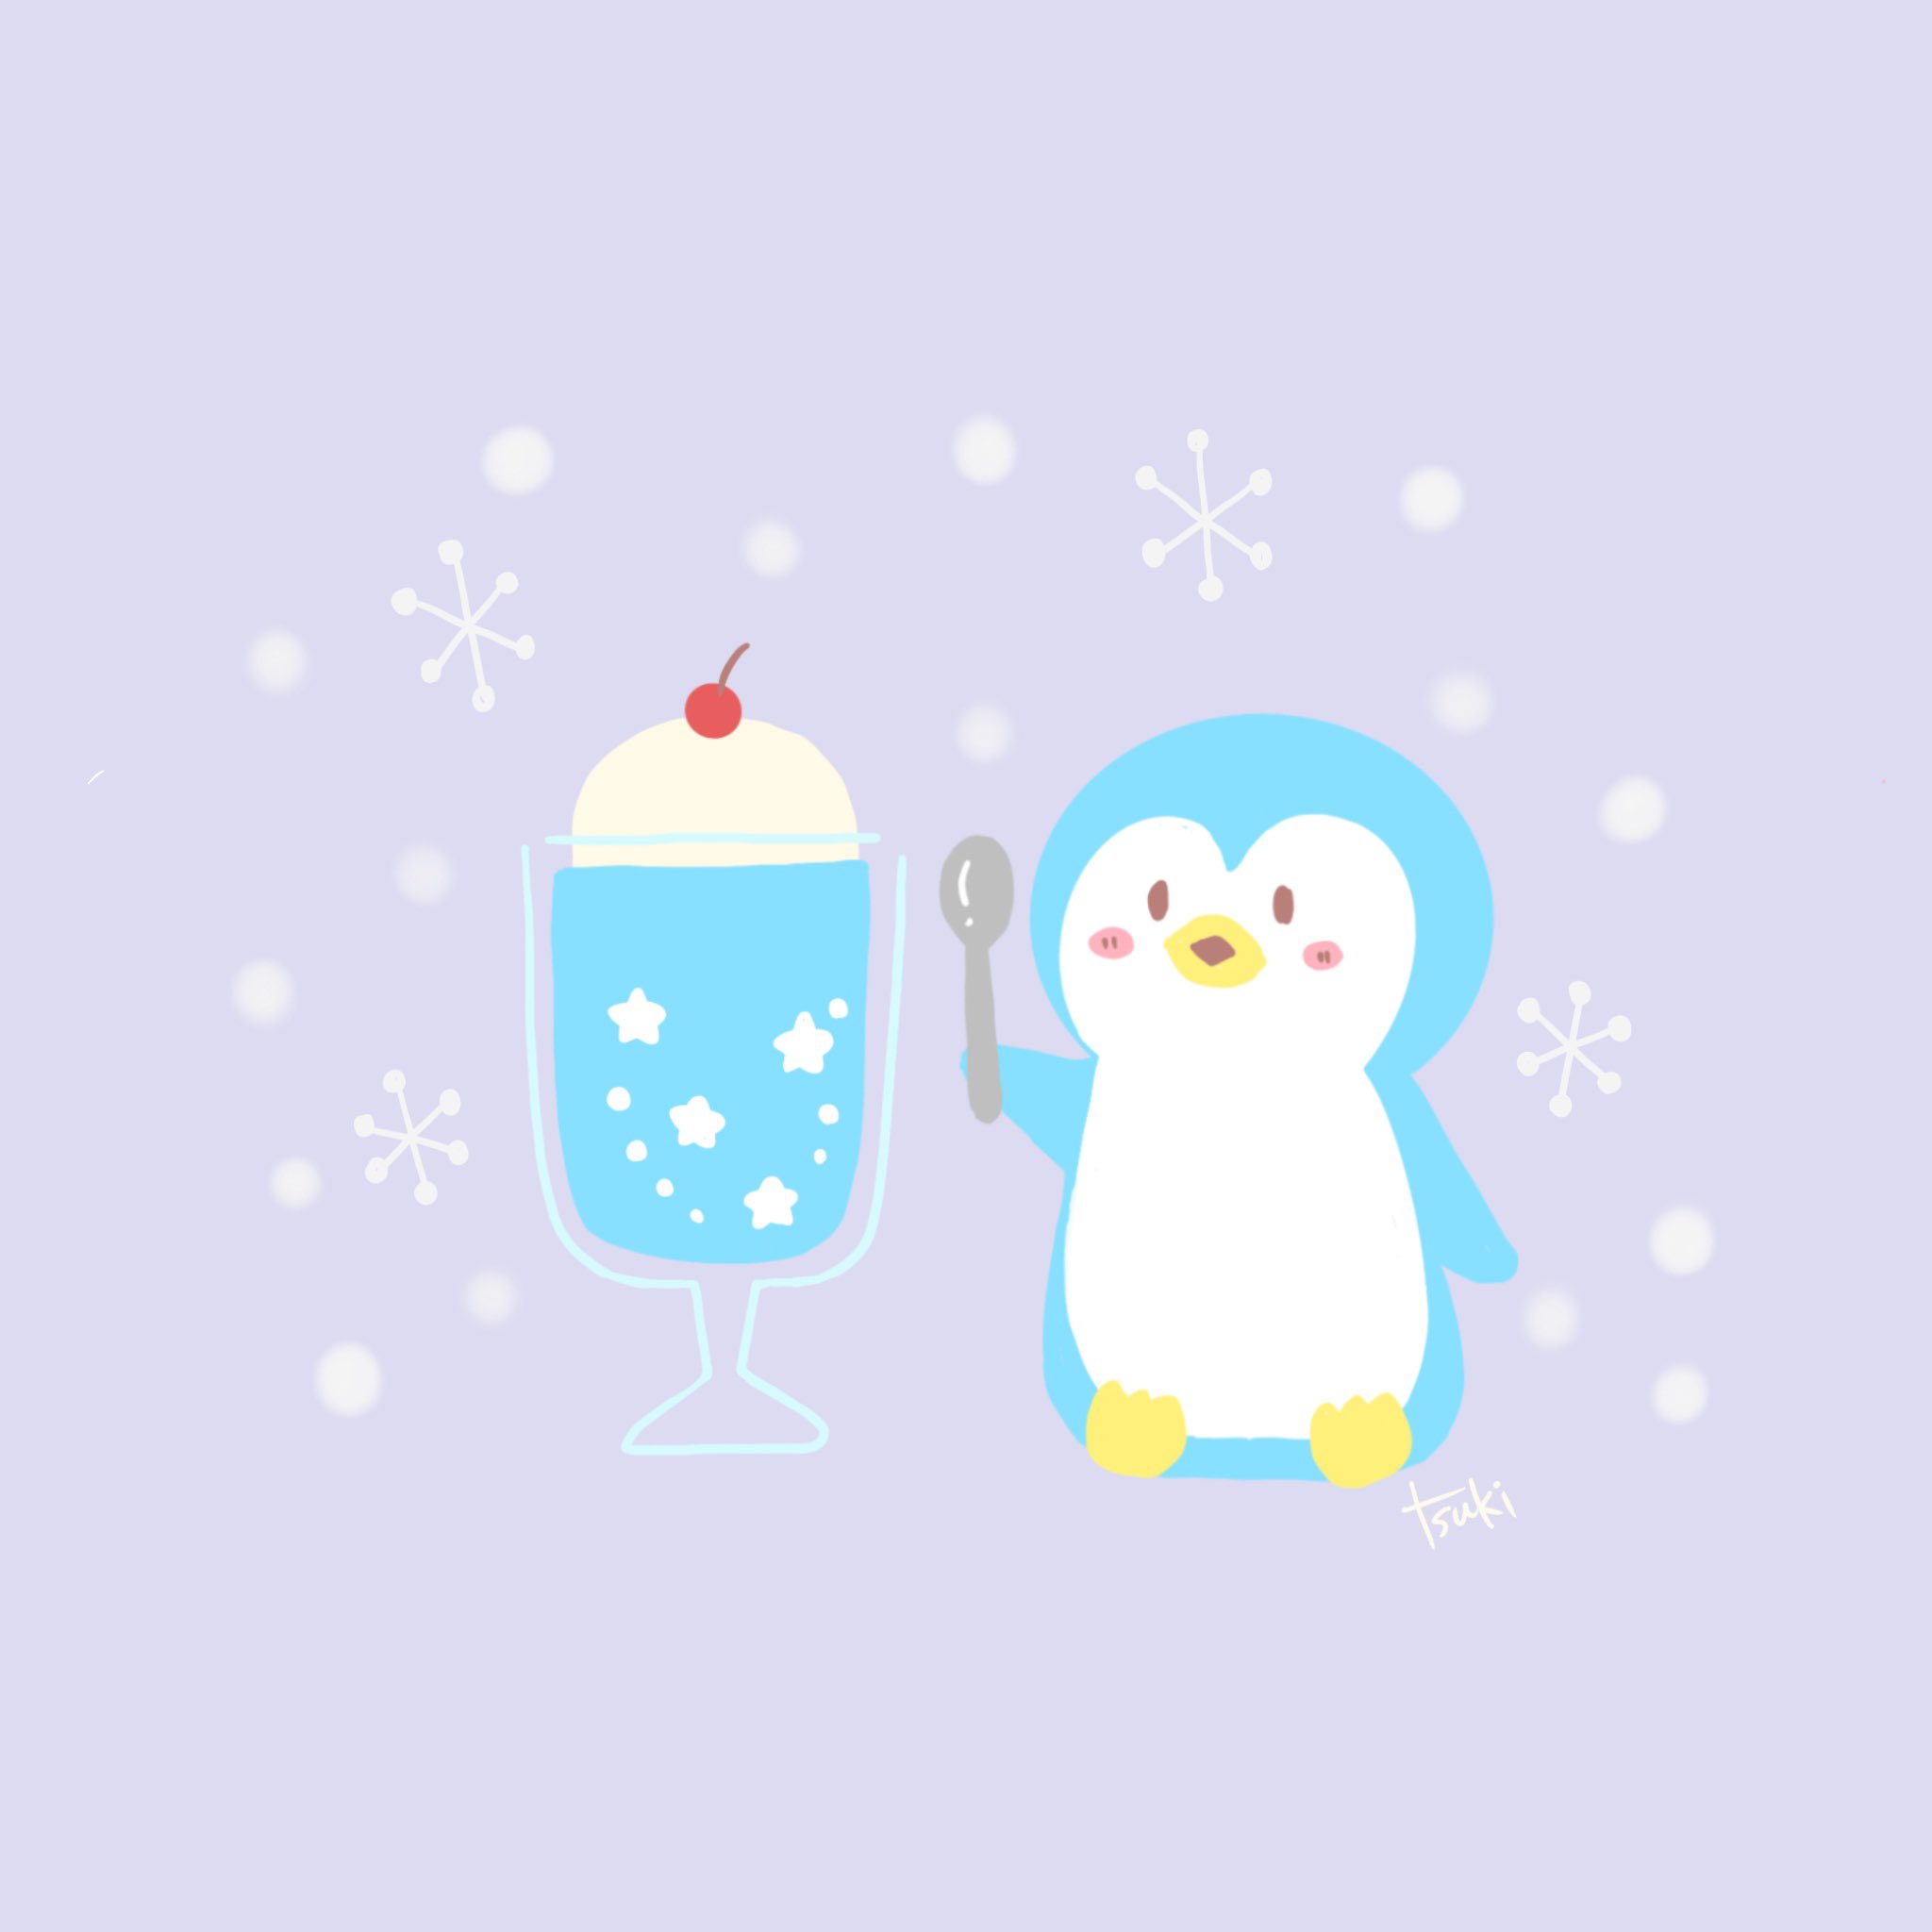 Twitter 上的 Tsuki 寒いときに食べるアイスは なかなか美味しいのだ イラスト イラスト好きな人と繋がりたい ゆるい絵 ゆるいイラスト ゆるかわ 癒し お絵描き フォローミー Illust クリームソーダ ペンギンイラスト T Co Wkpdpbekr7 Twitter